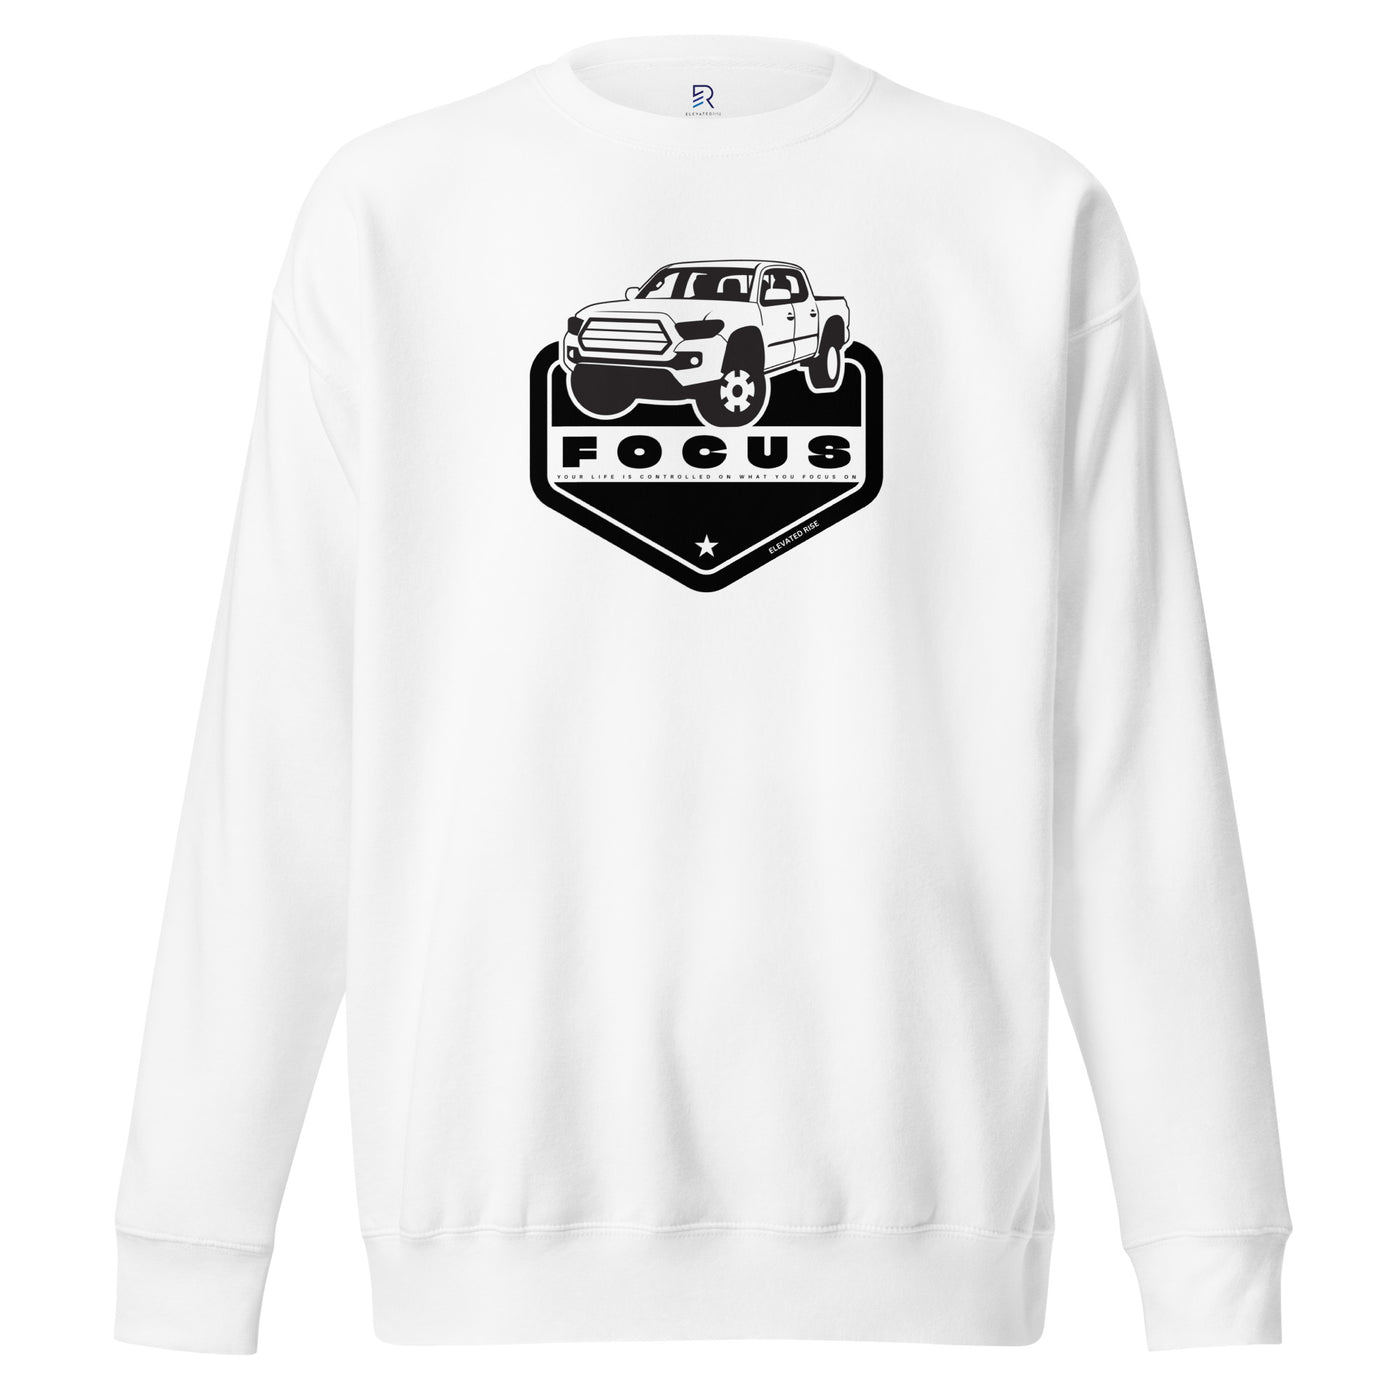 Men's Premium White Sweatshirt - Focus On